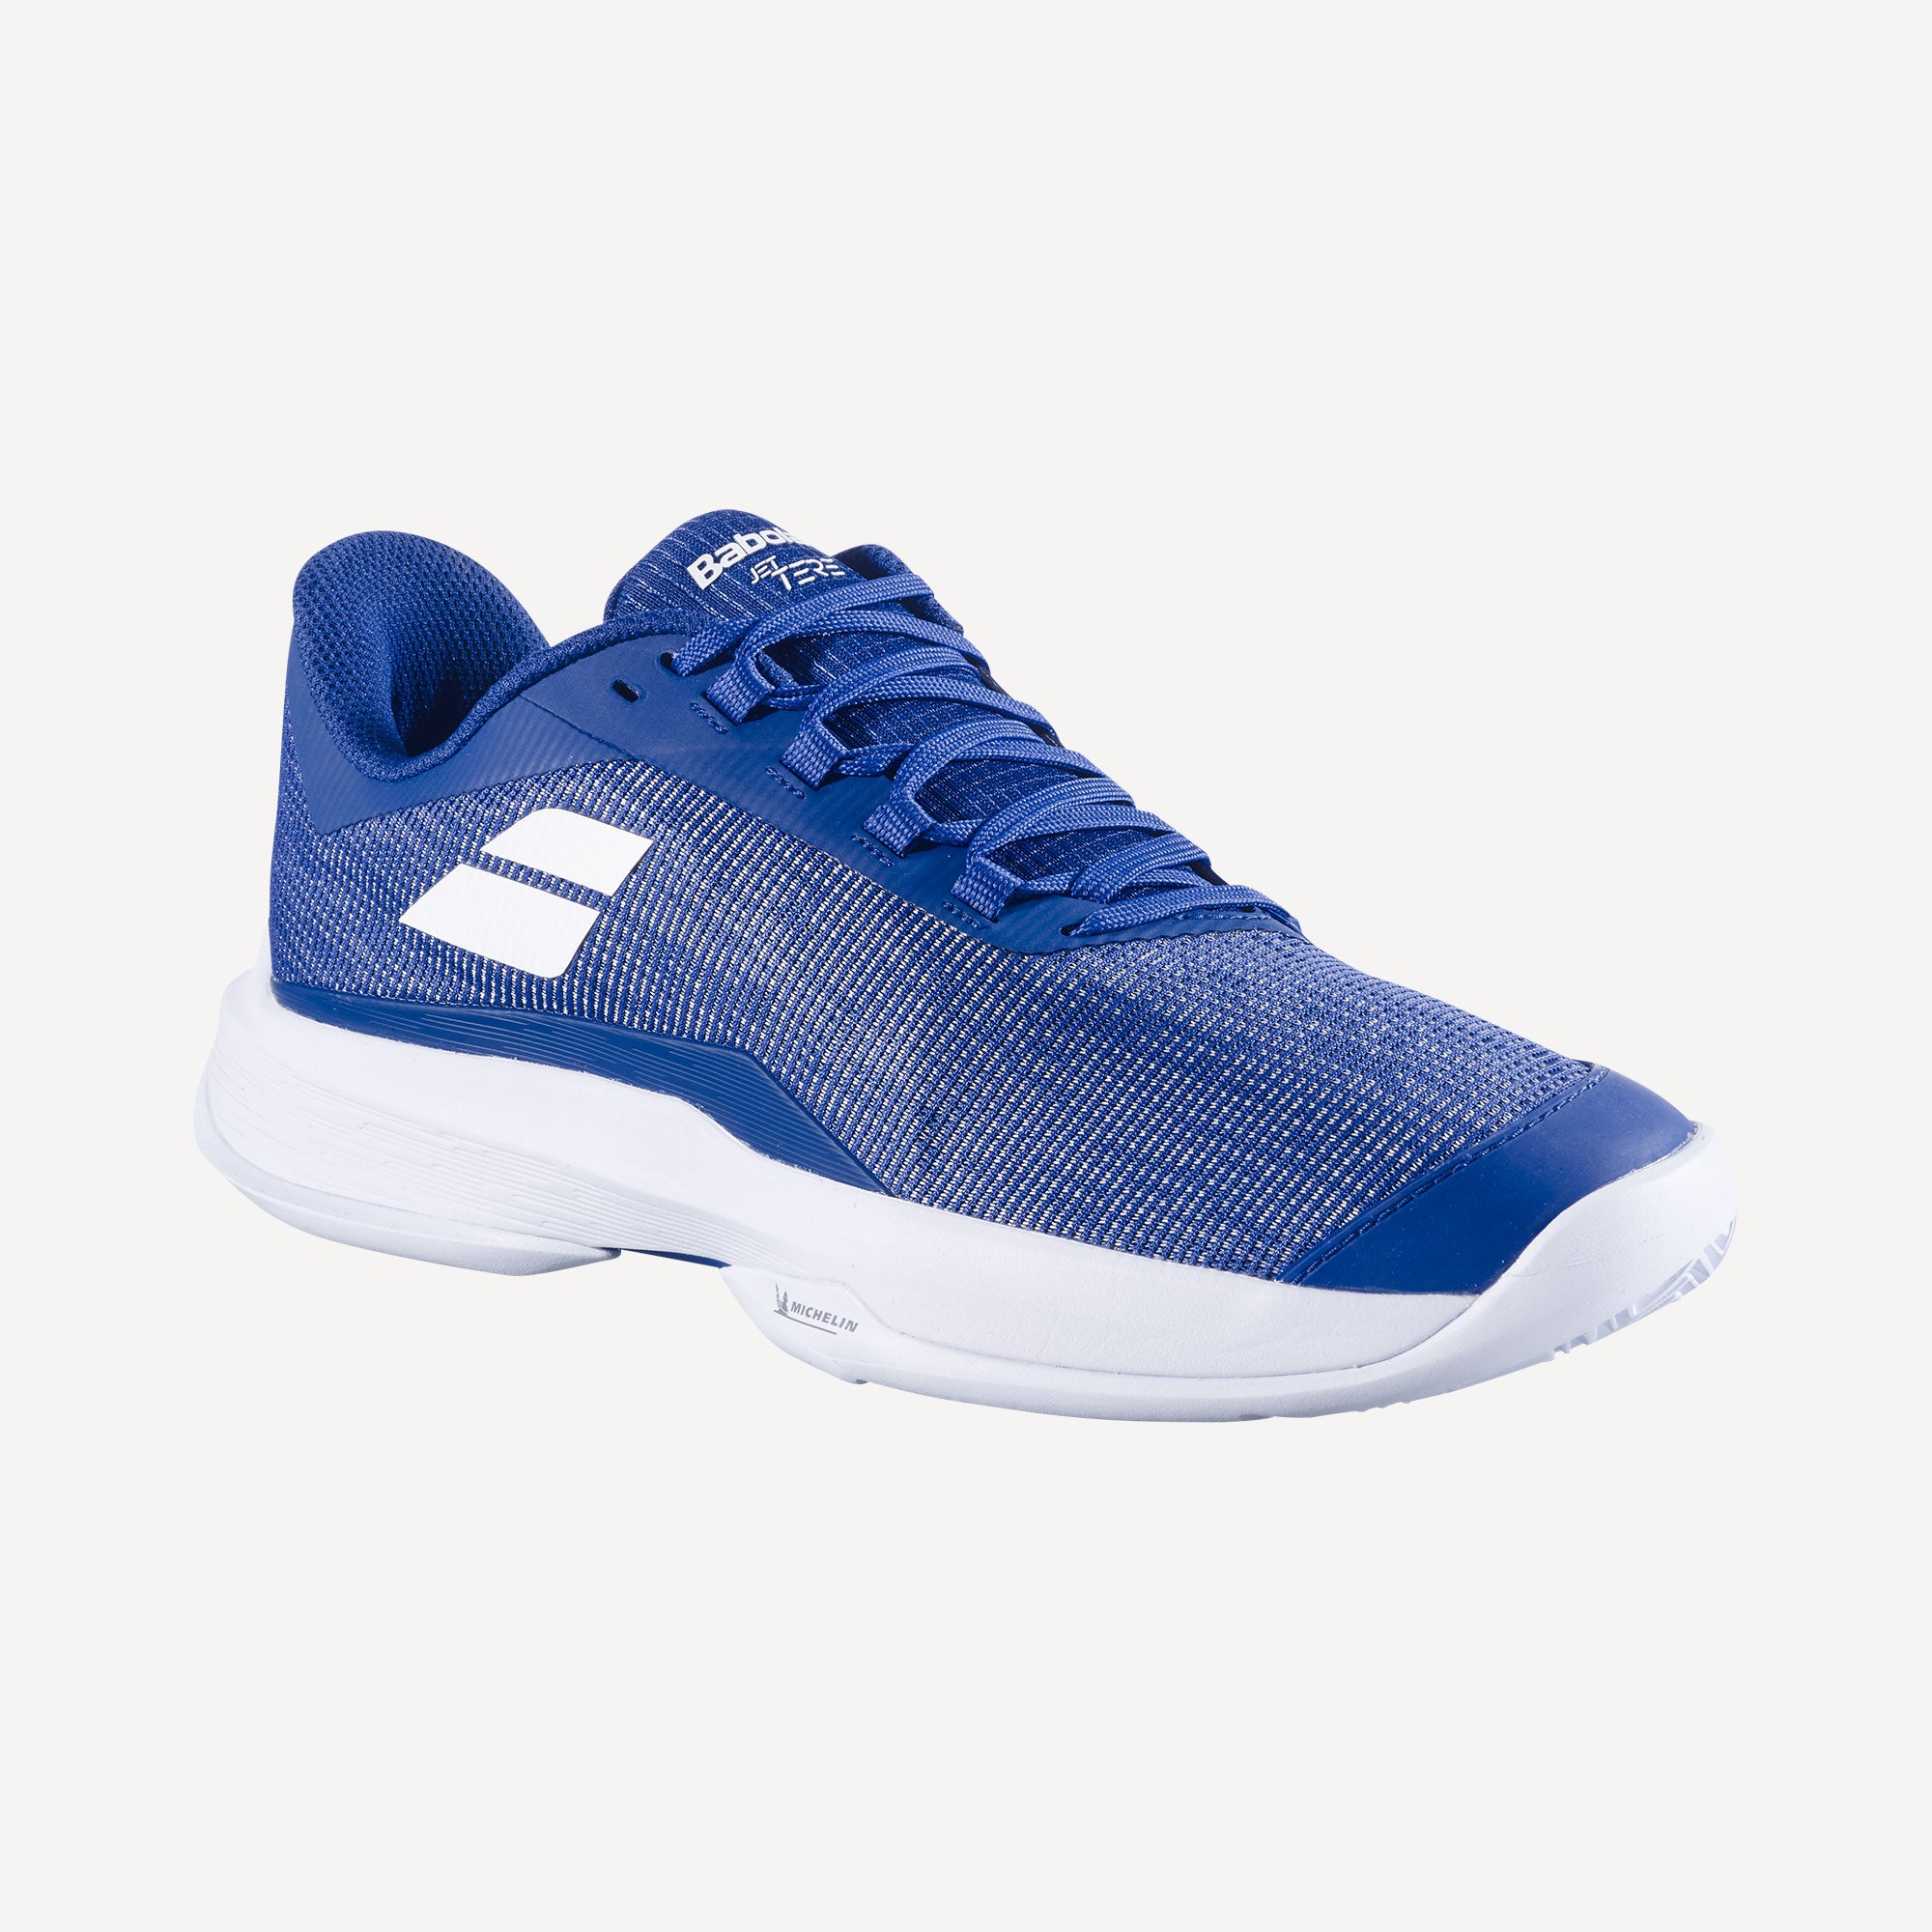 Babolat Jet Tere Men's Clay Court Tennis Shoes - Blue (4)